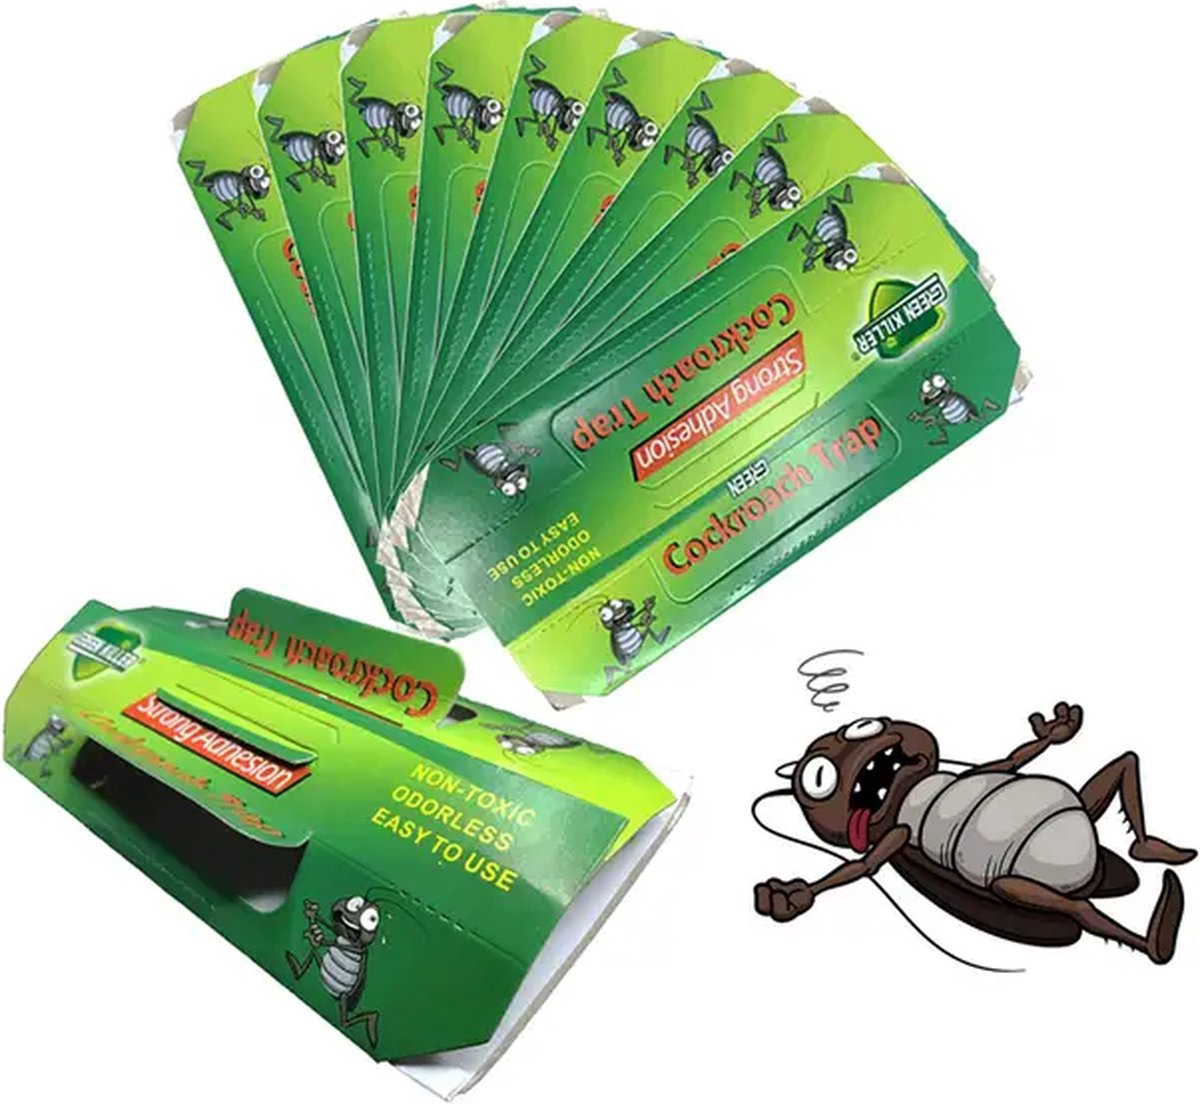 10 Pack Green Leaf Powder Cockroach Killer Bait Répulsif Insect Killer Trap  Pest Control Livraison gratuite